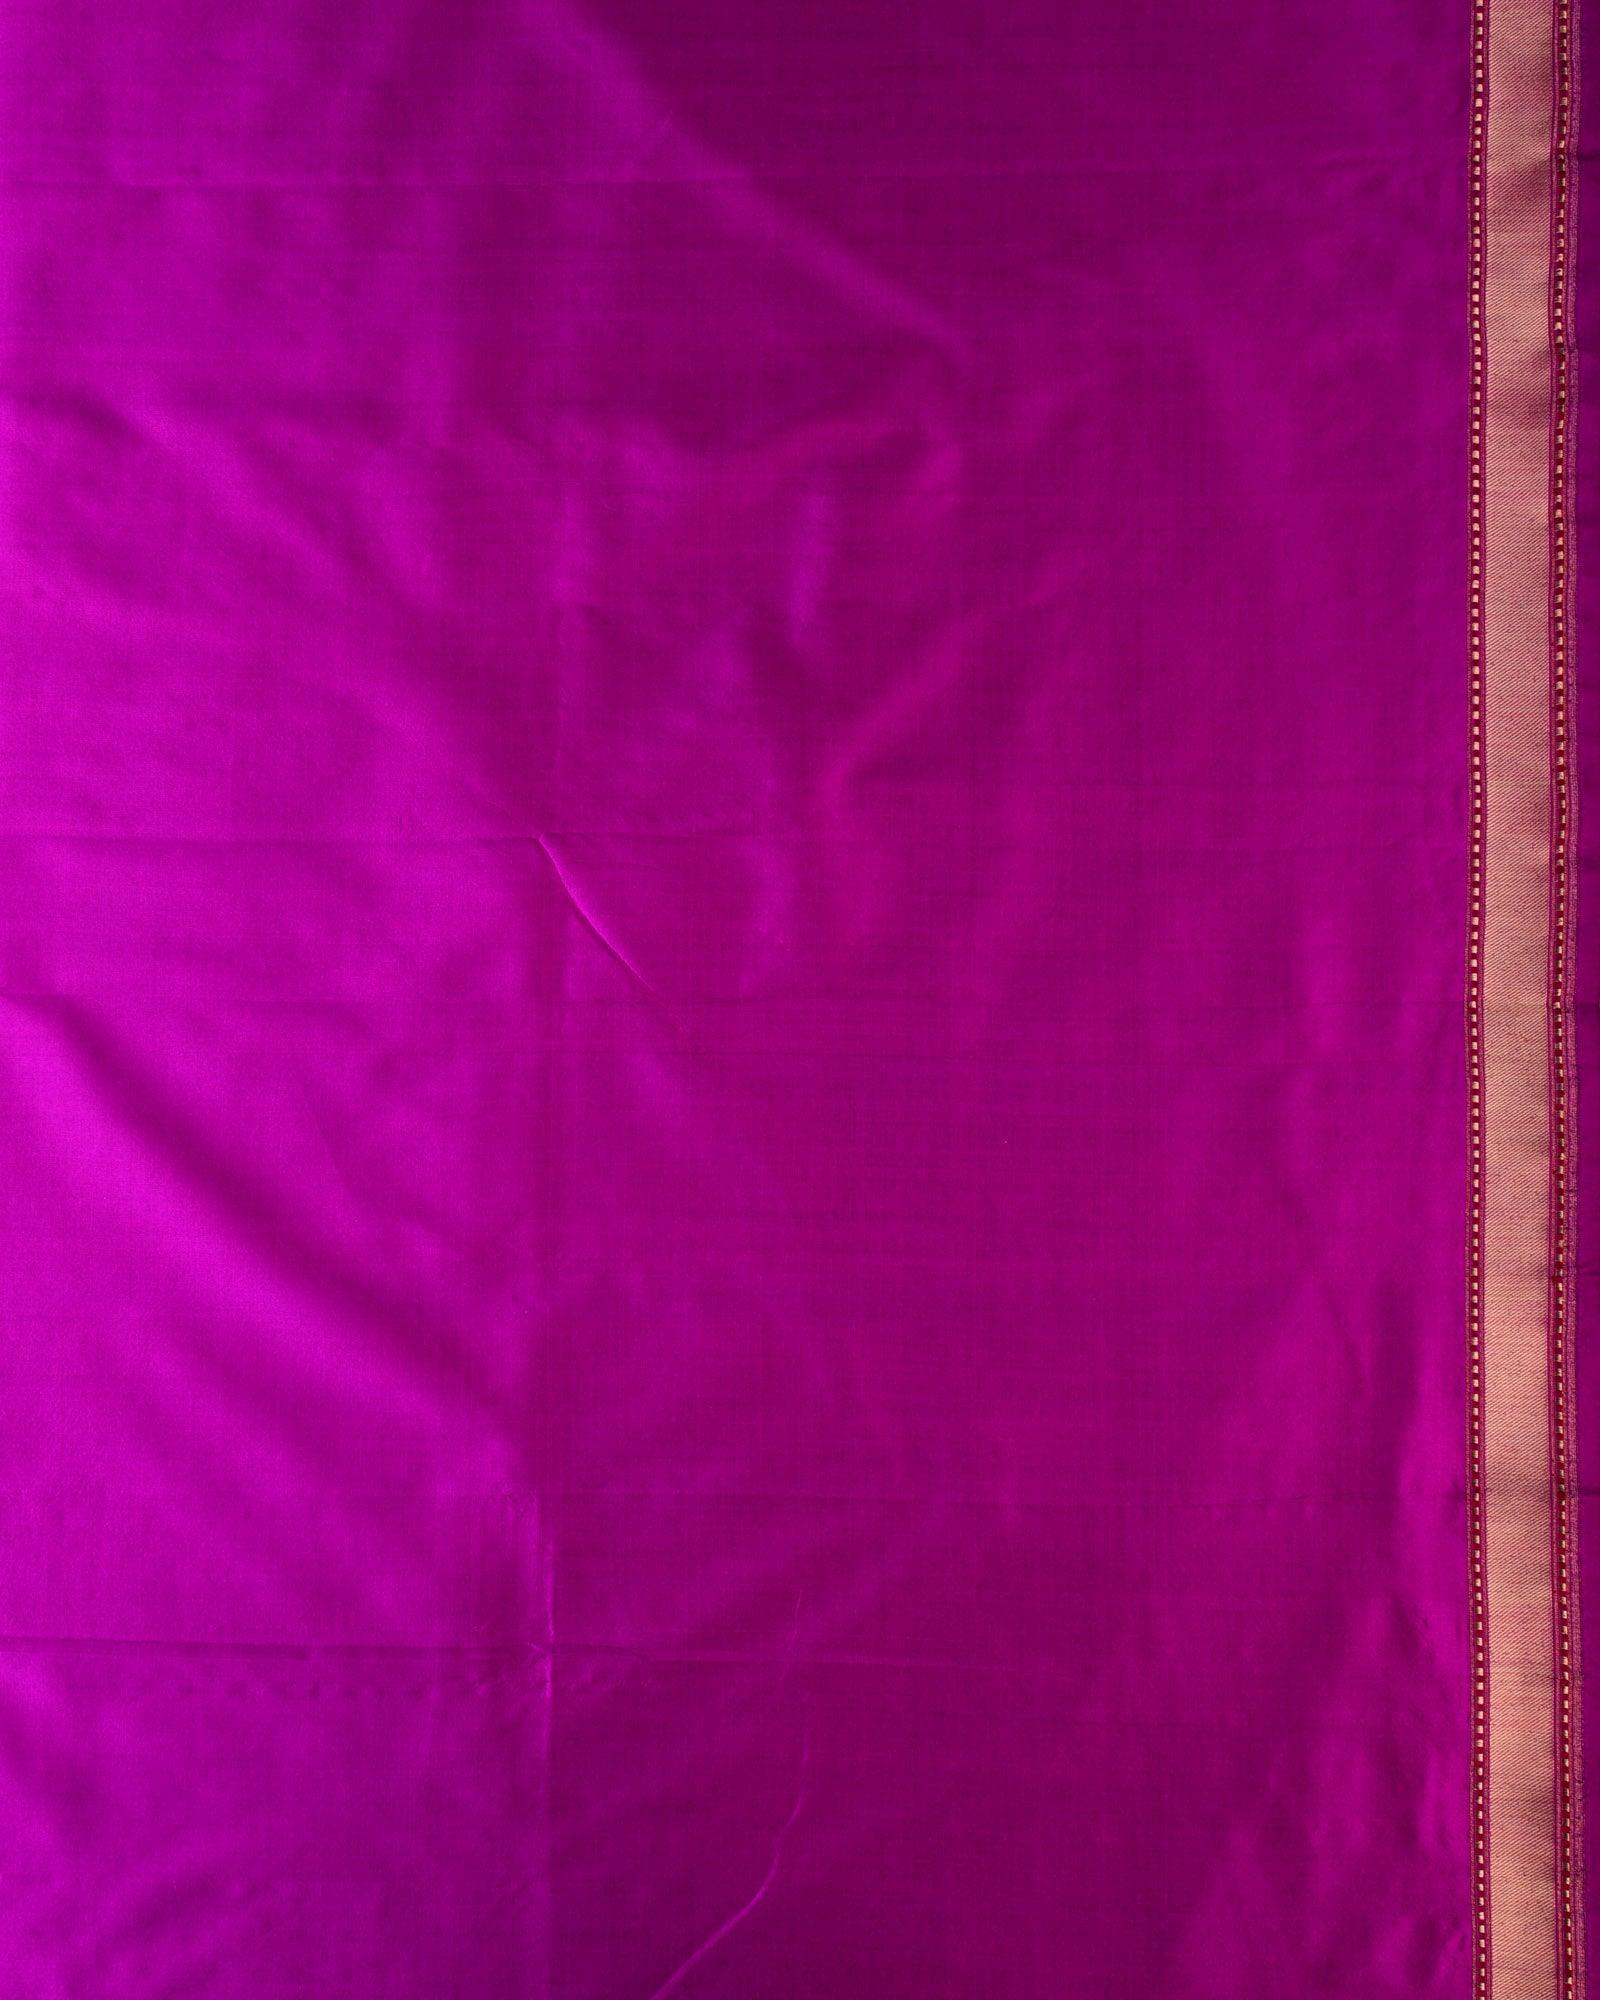 Magenta Banarasi Duet Buti Kadhuan Brocade Handwoven Katan Silk Saree - By HolyWeaves, Benares